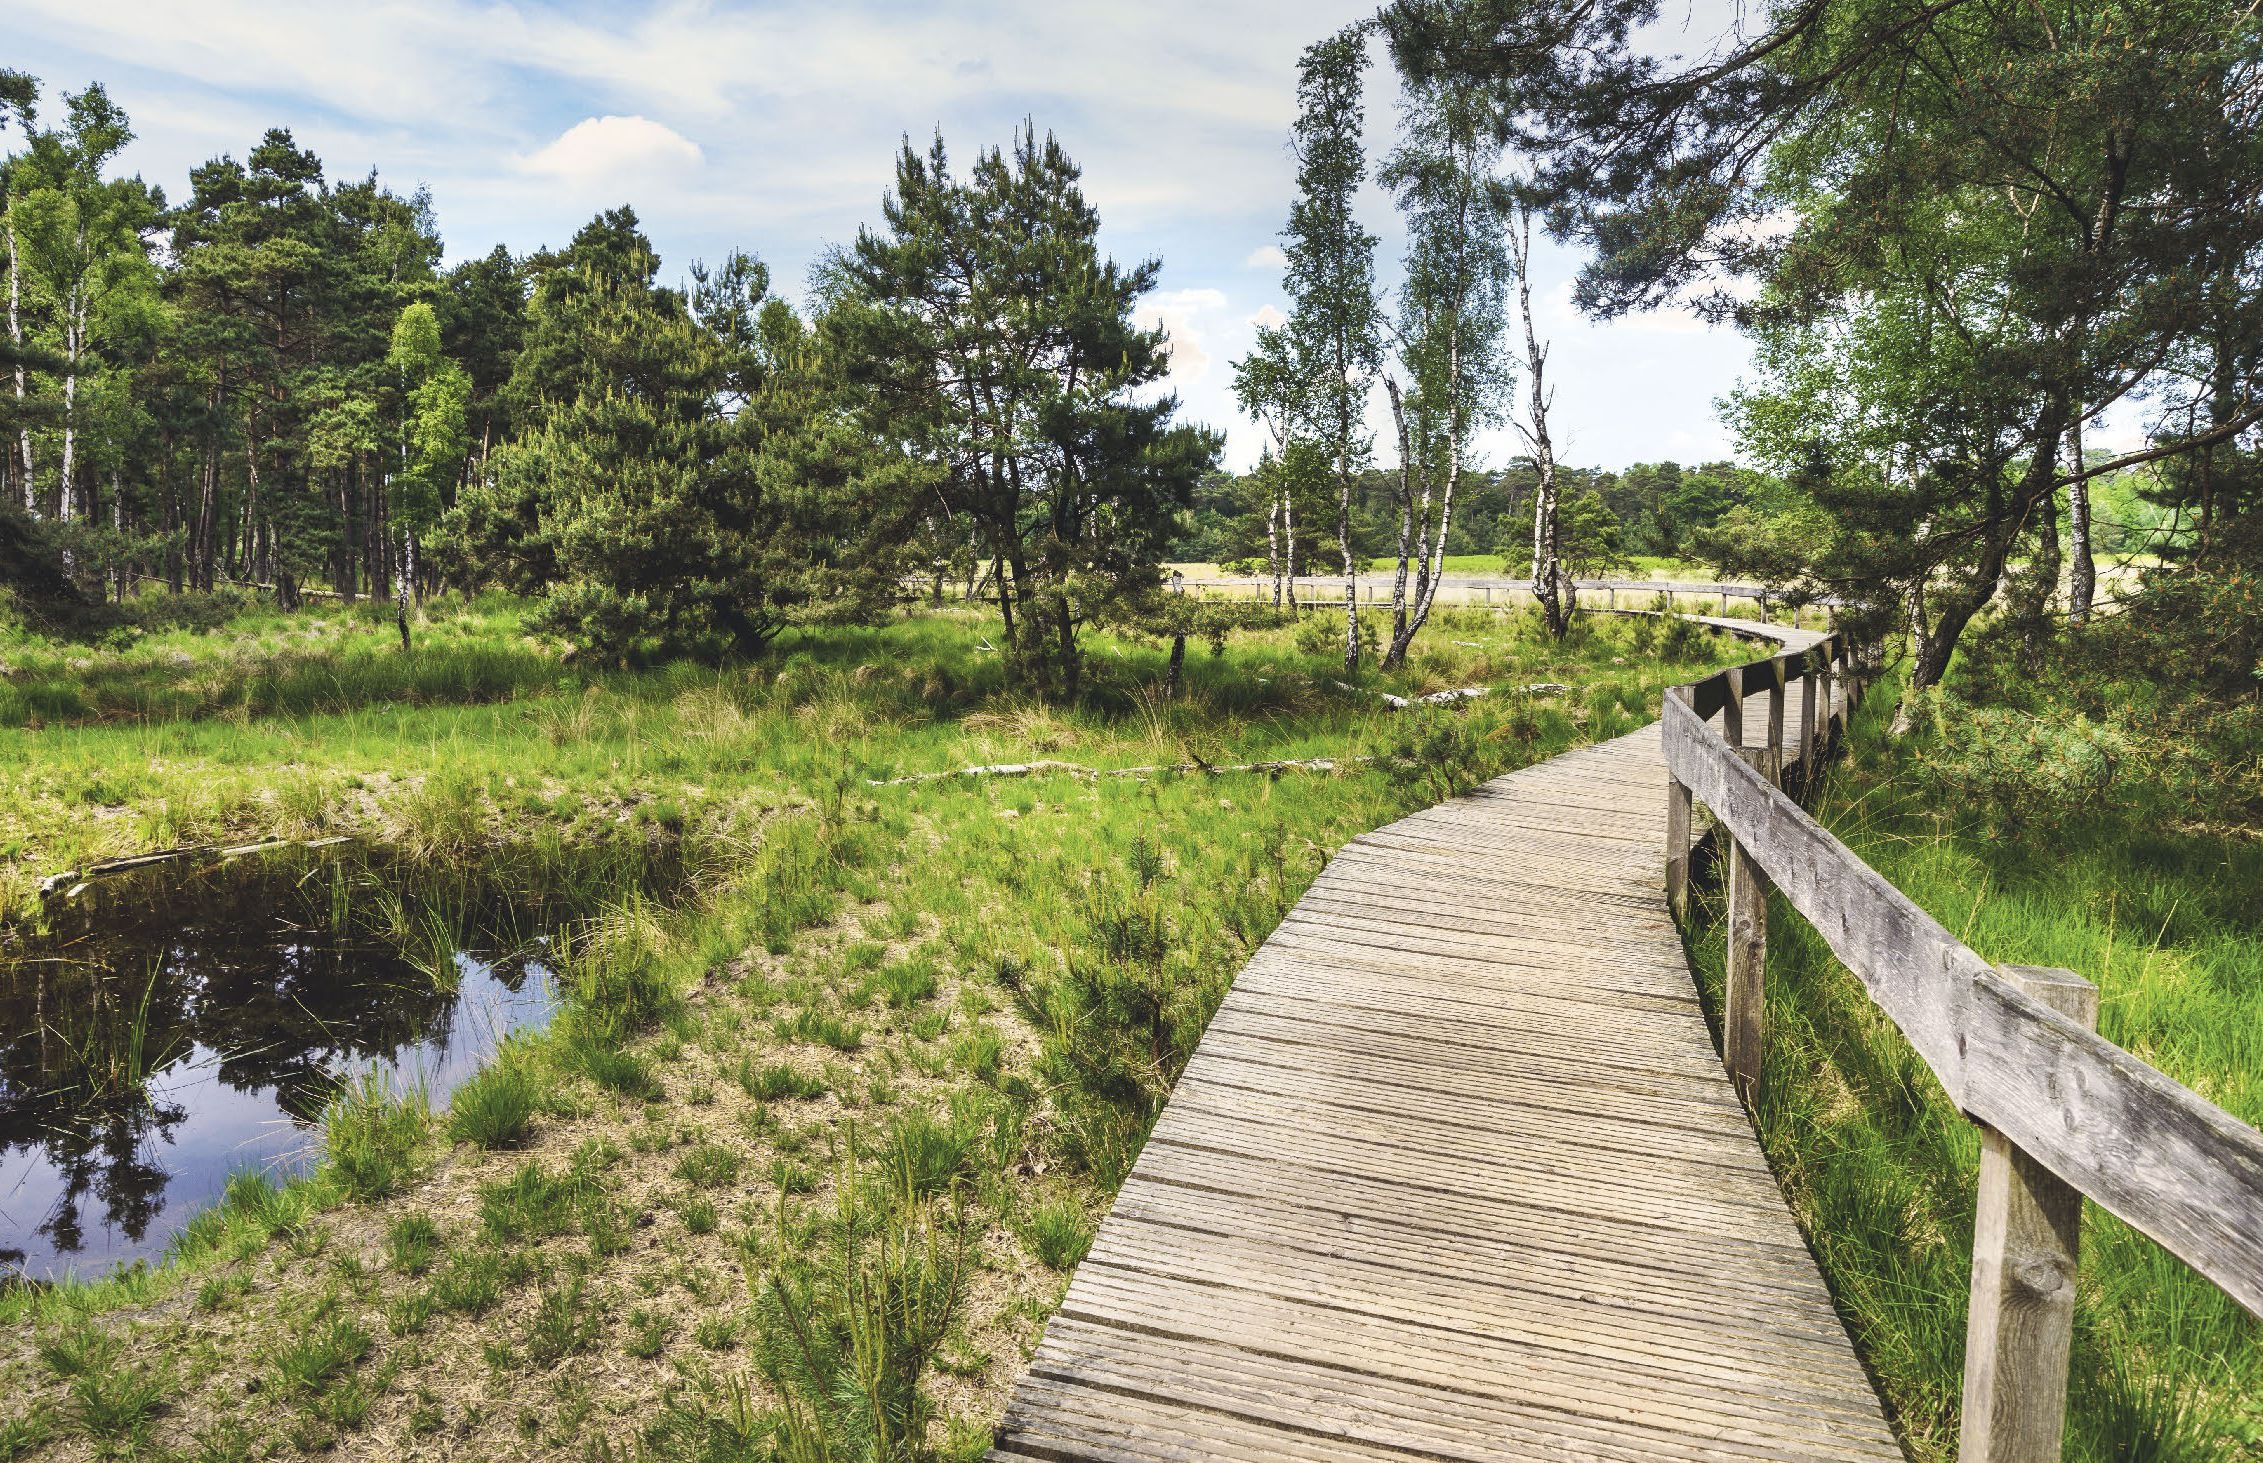 Das Foto zeigt einen Holzsteg, der durch grüne Natur führt.